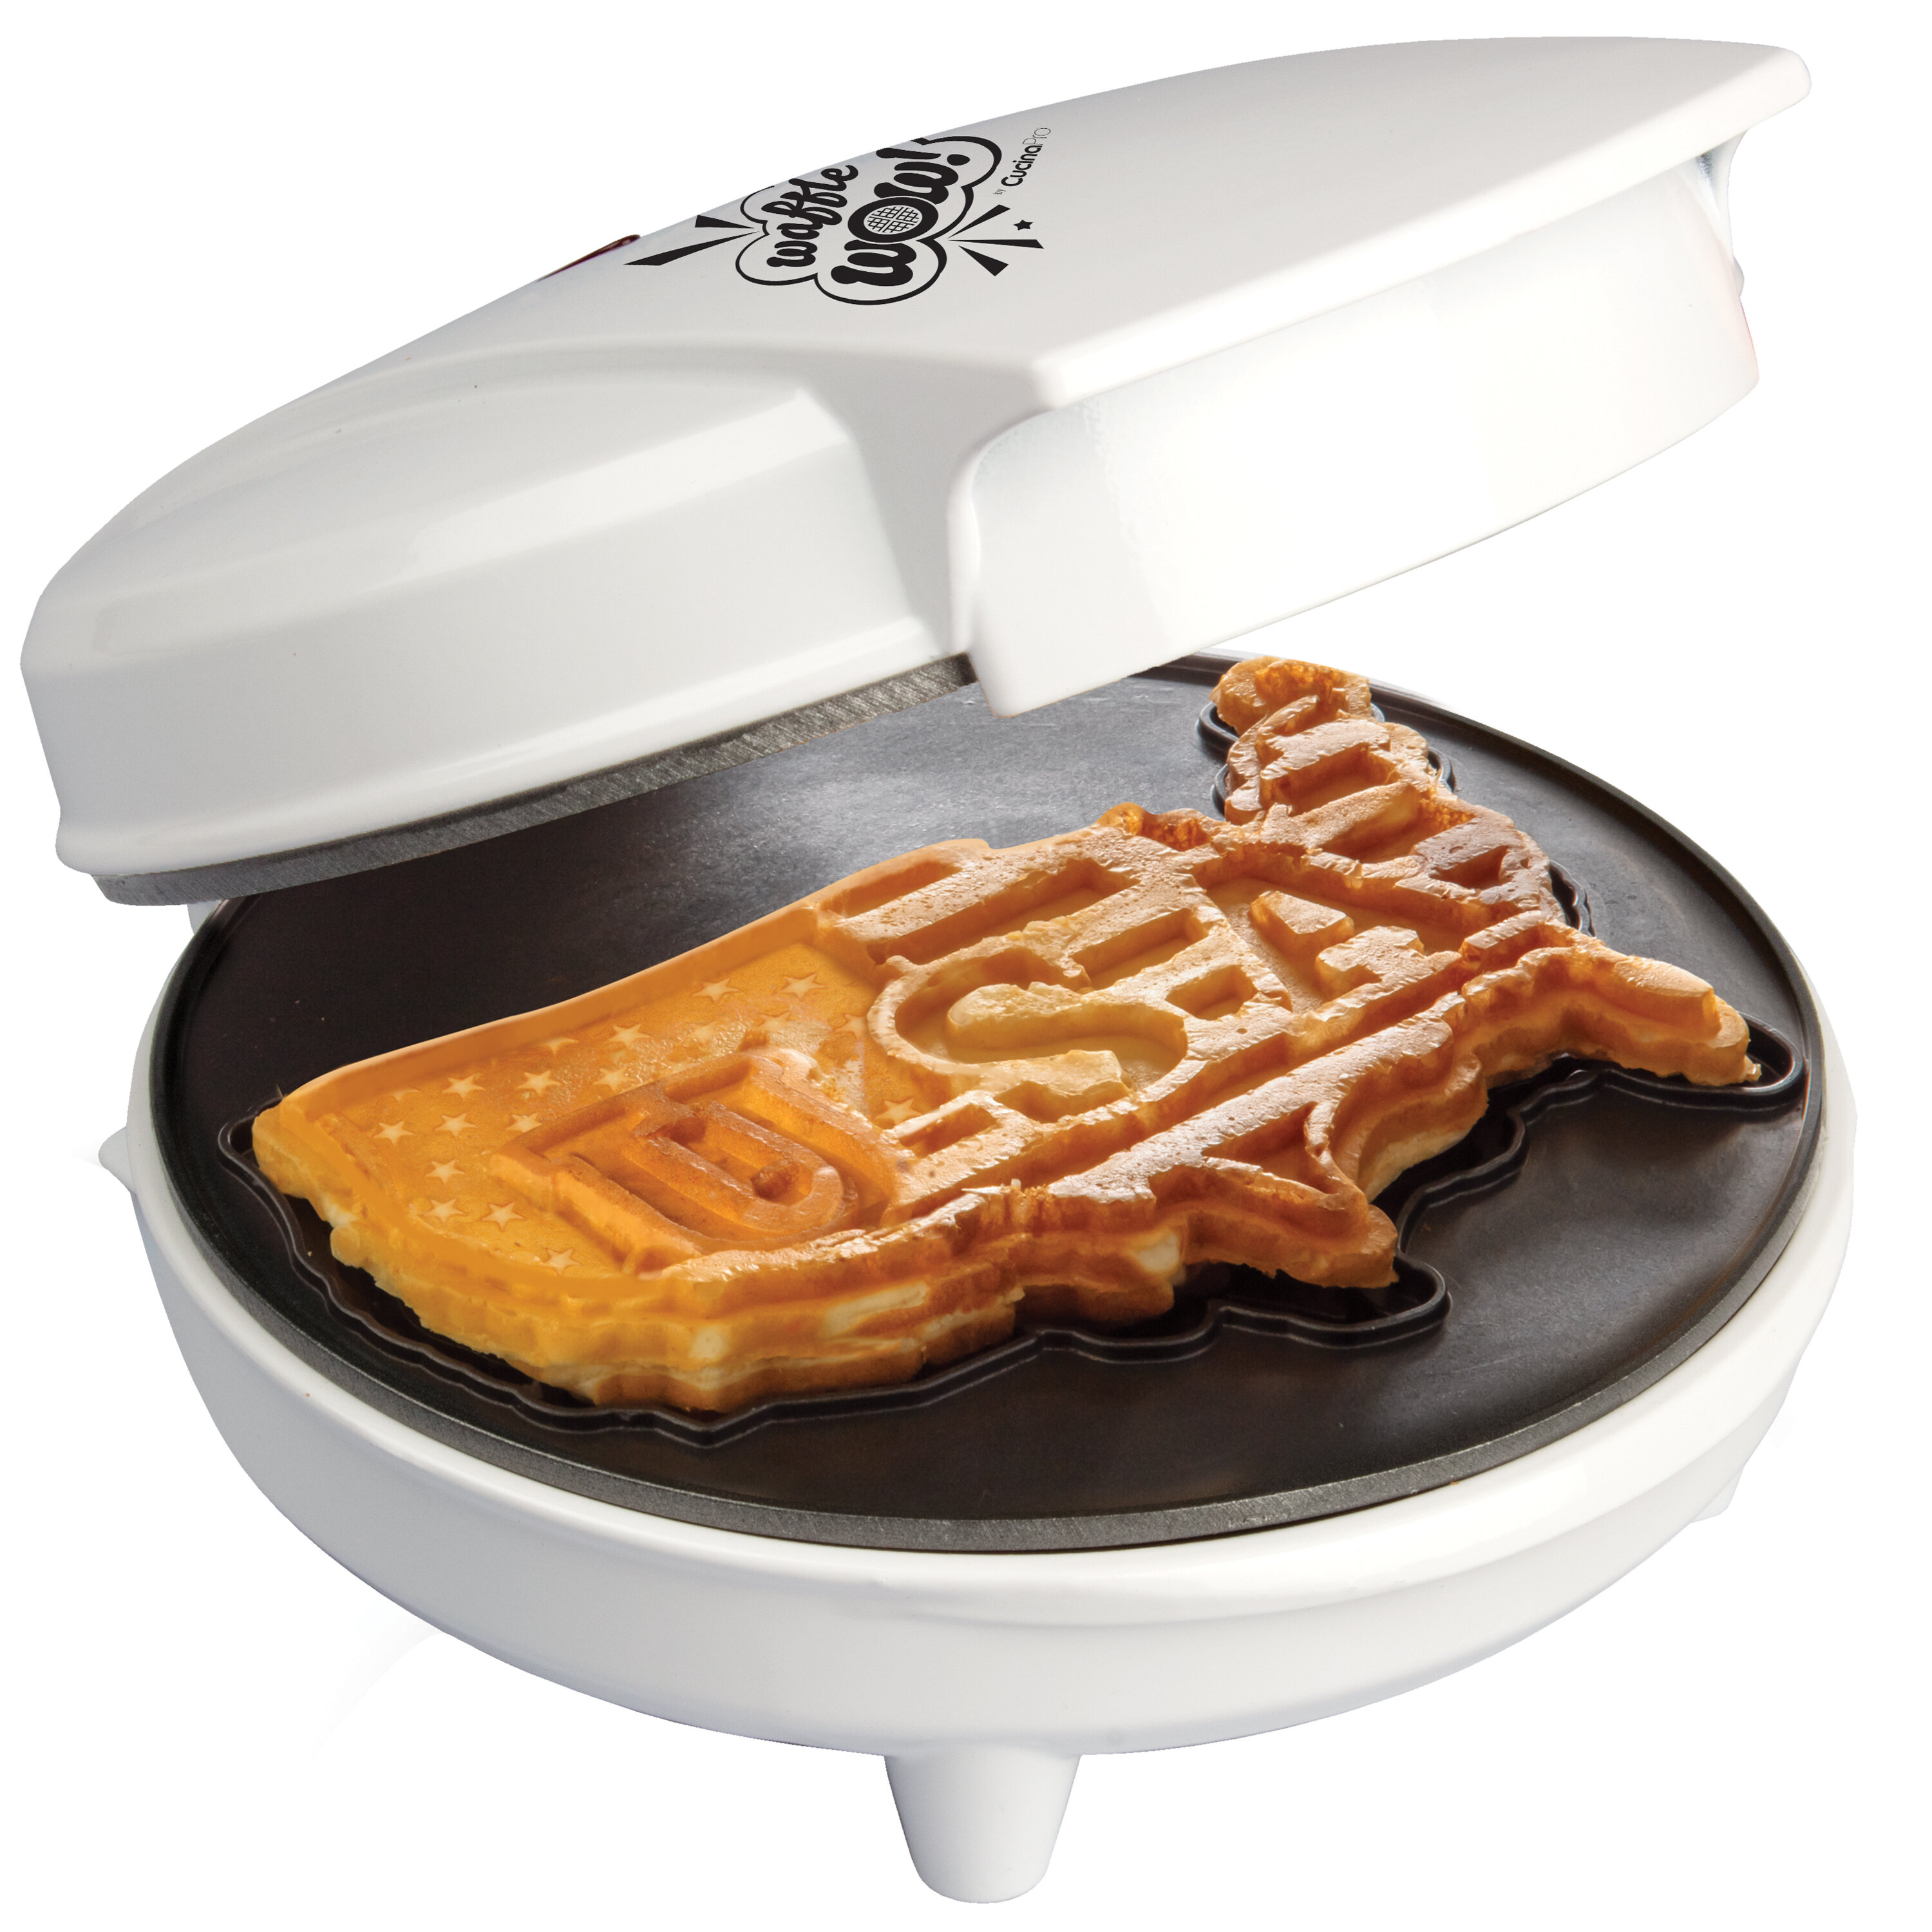 https://assets.wfcdn.com/im/13158328/compr-r85/1450/145009791/cucinapro-75-non-stick-waffle-maker.jpg